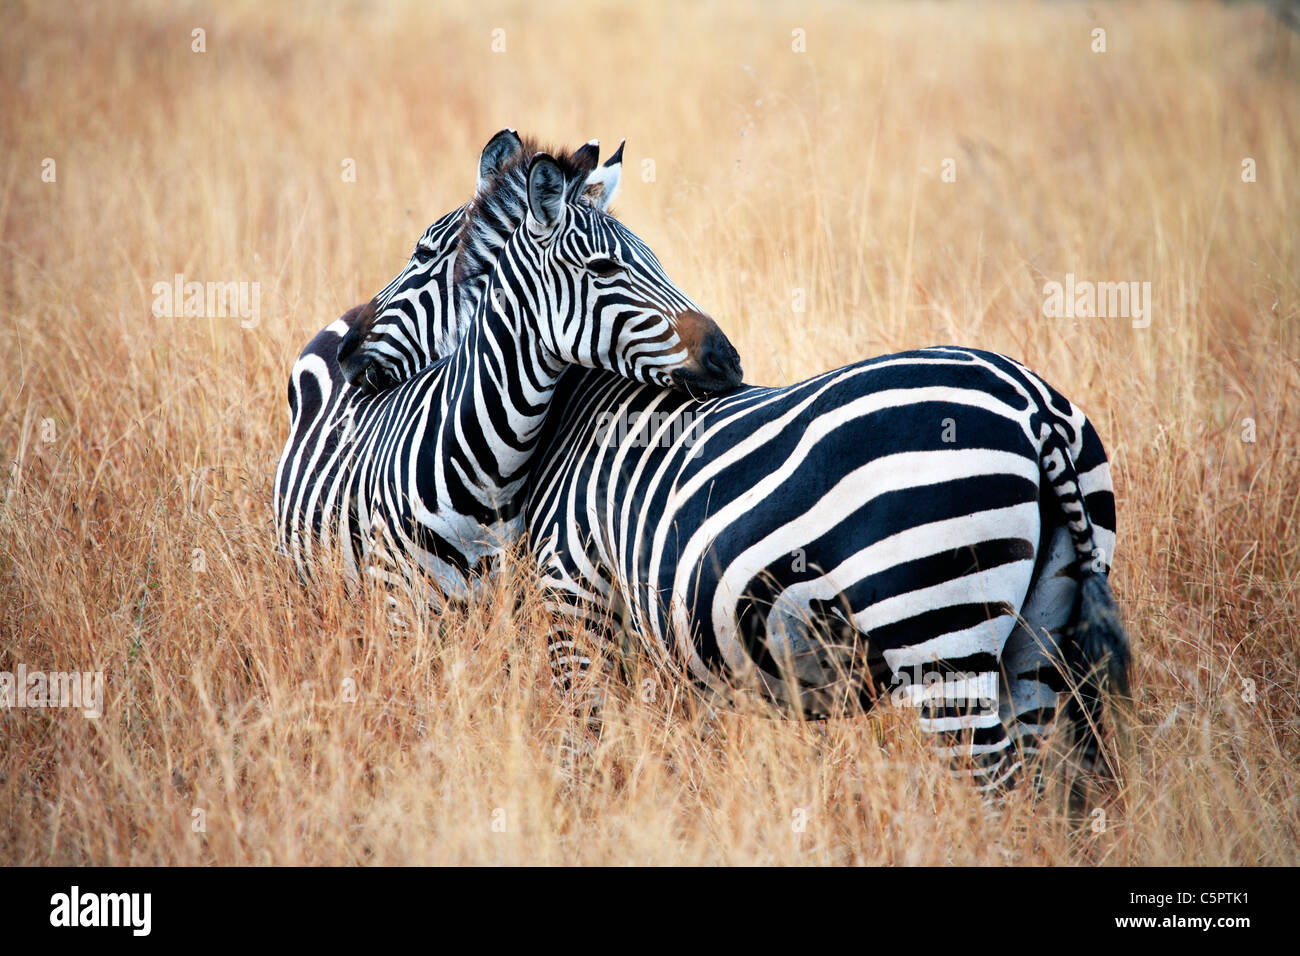 Equus quagga (Zebra), Tarangire National Park, Tanzania Stock Photo